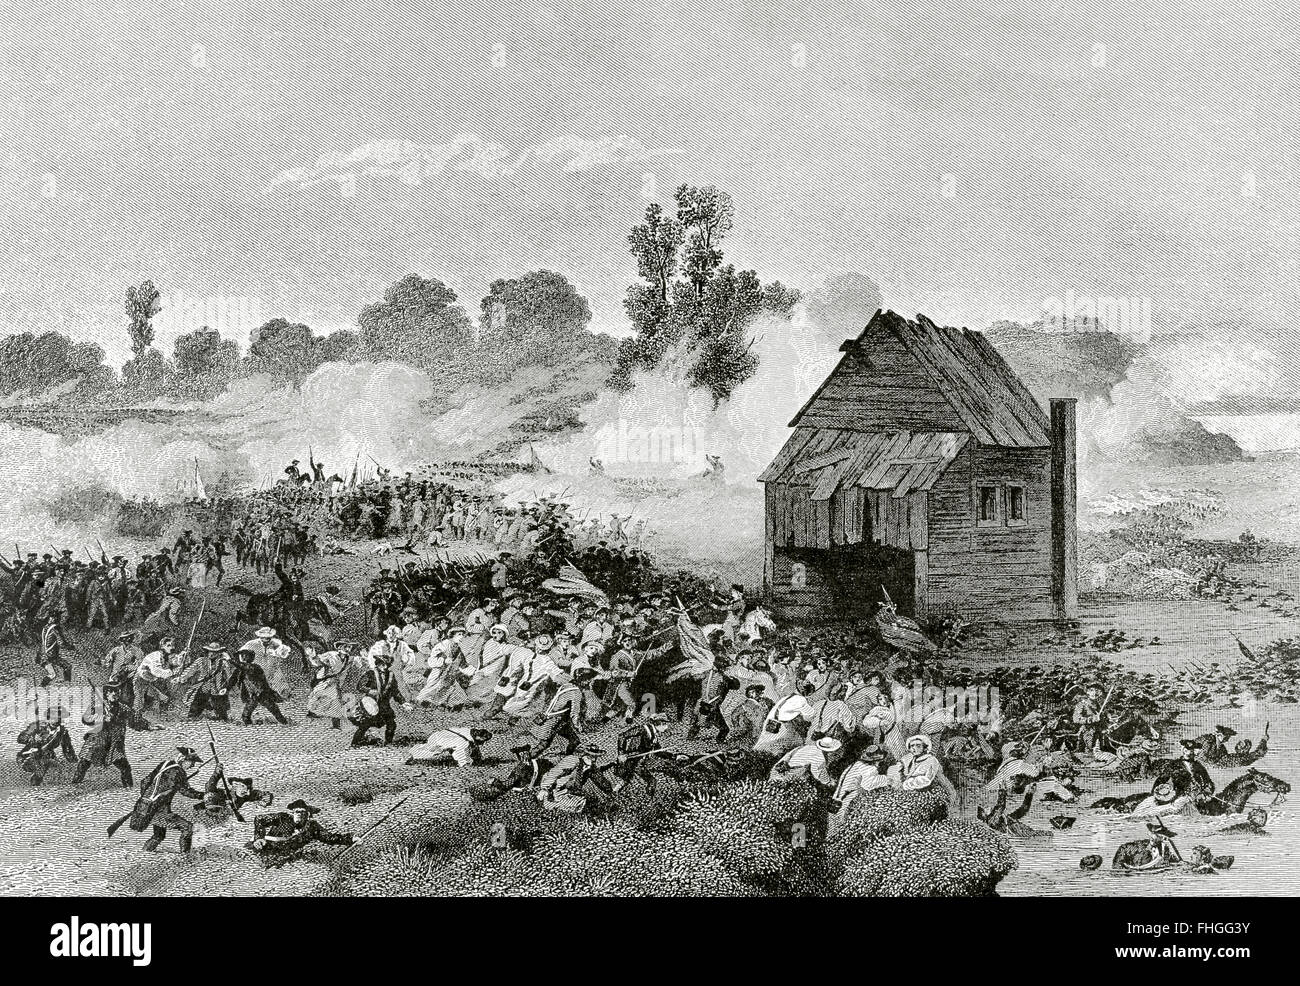 Amerikanischer Unabhängigkeitskrieg (1775-1783). Die Schlacht von Long Island oder Schlacht von Brooklyn (27. August 1776). Niederlage für die kontinentale Armee unter General George Washington. Kupferstich von Alonzo Chappel. Stockfoto